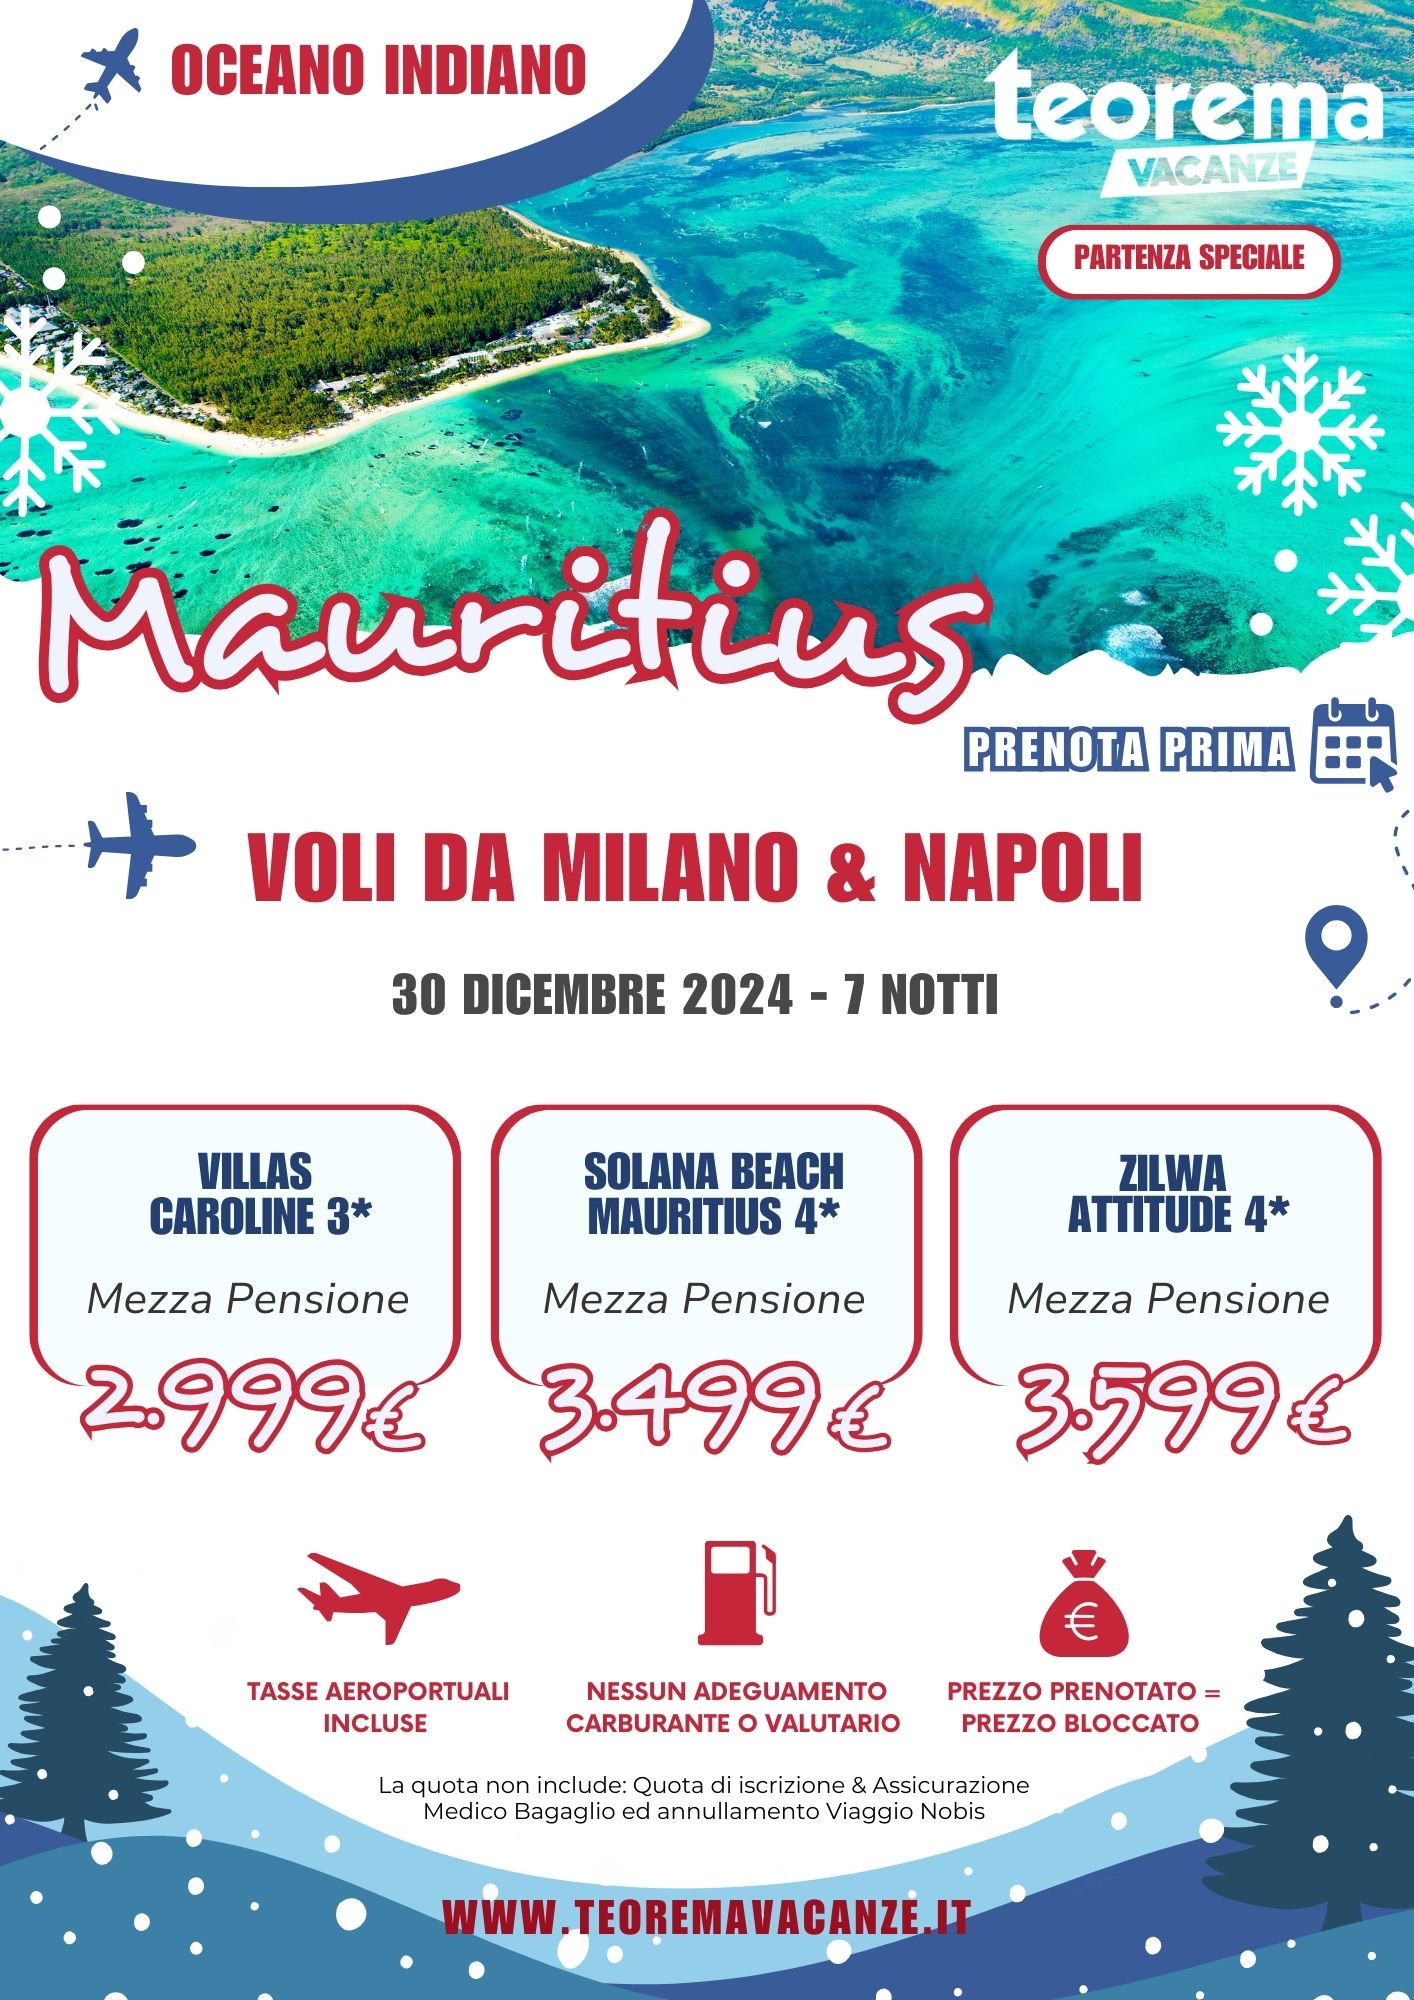 TEOREMA WINTER 2025 - MAURITIUS DA MILANO & NAPOLI